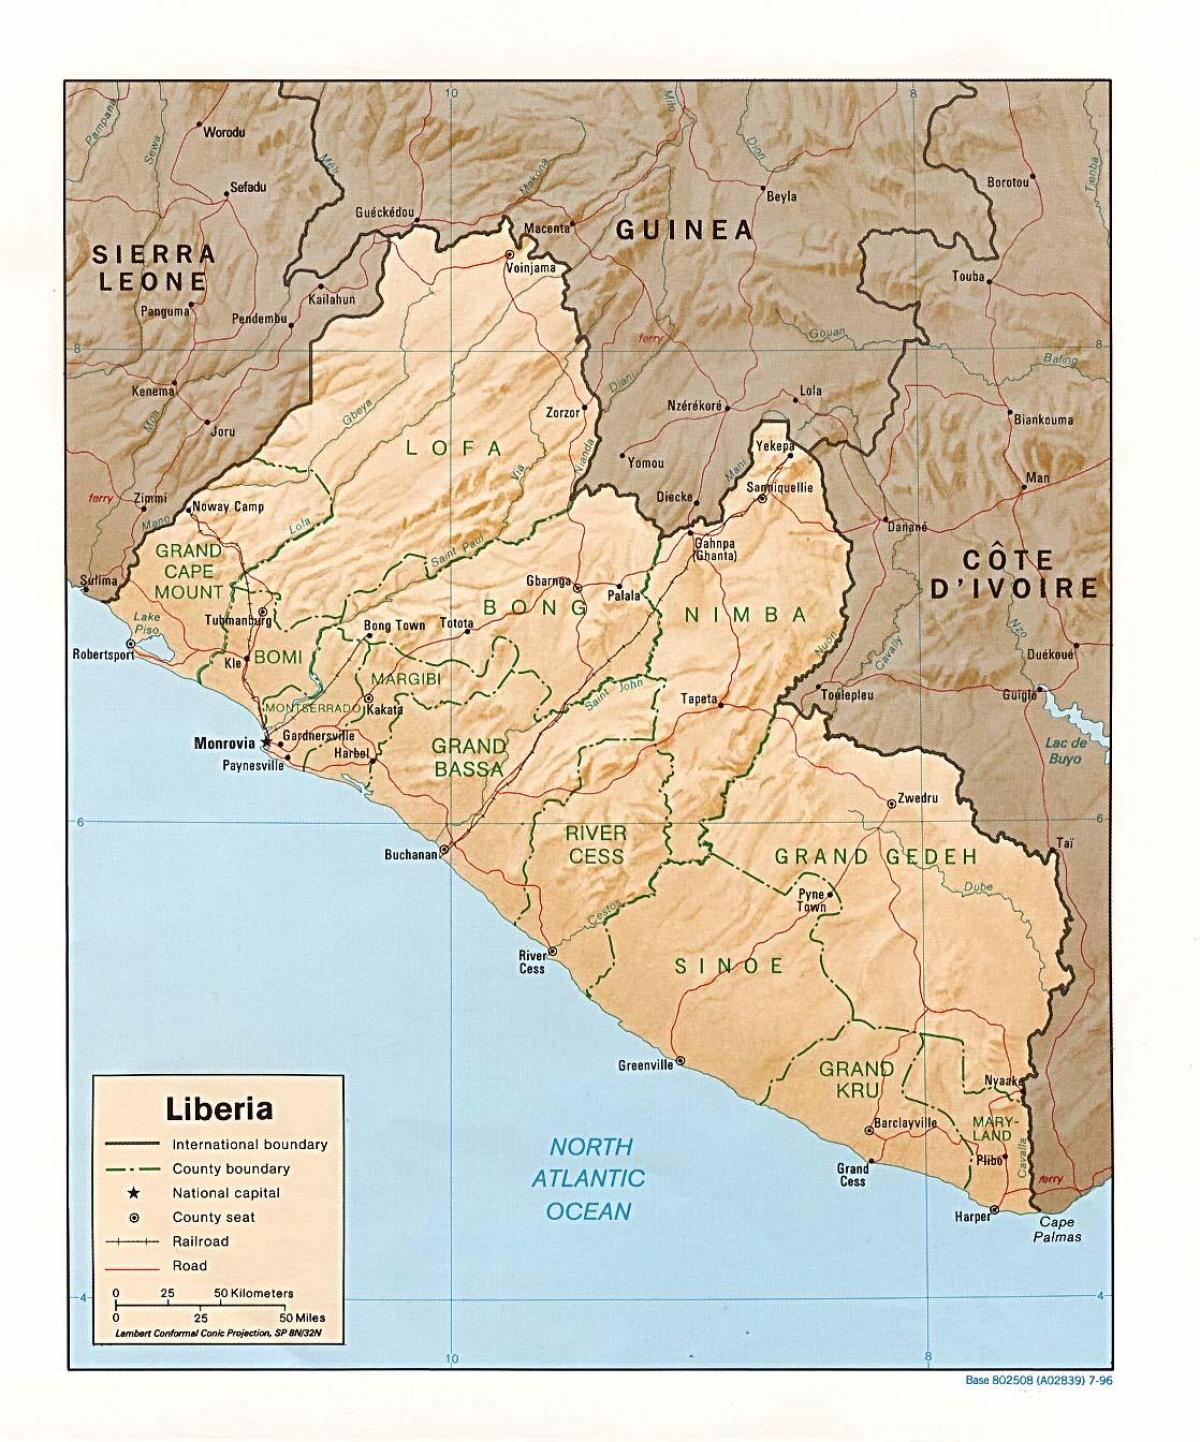 nacrtati kartu terena Liberiji